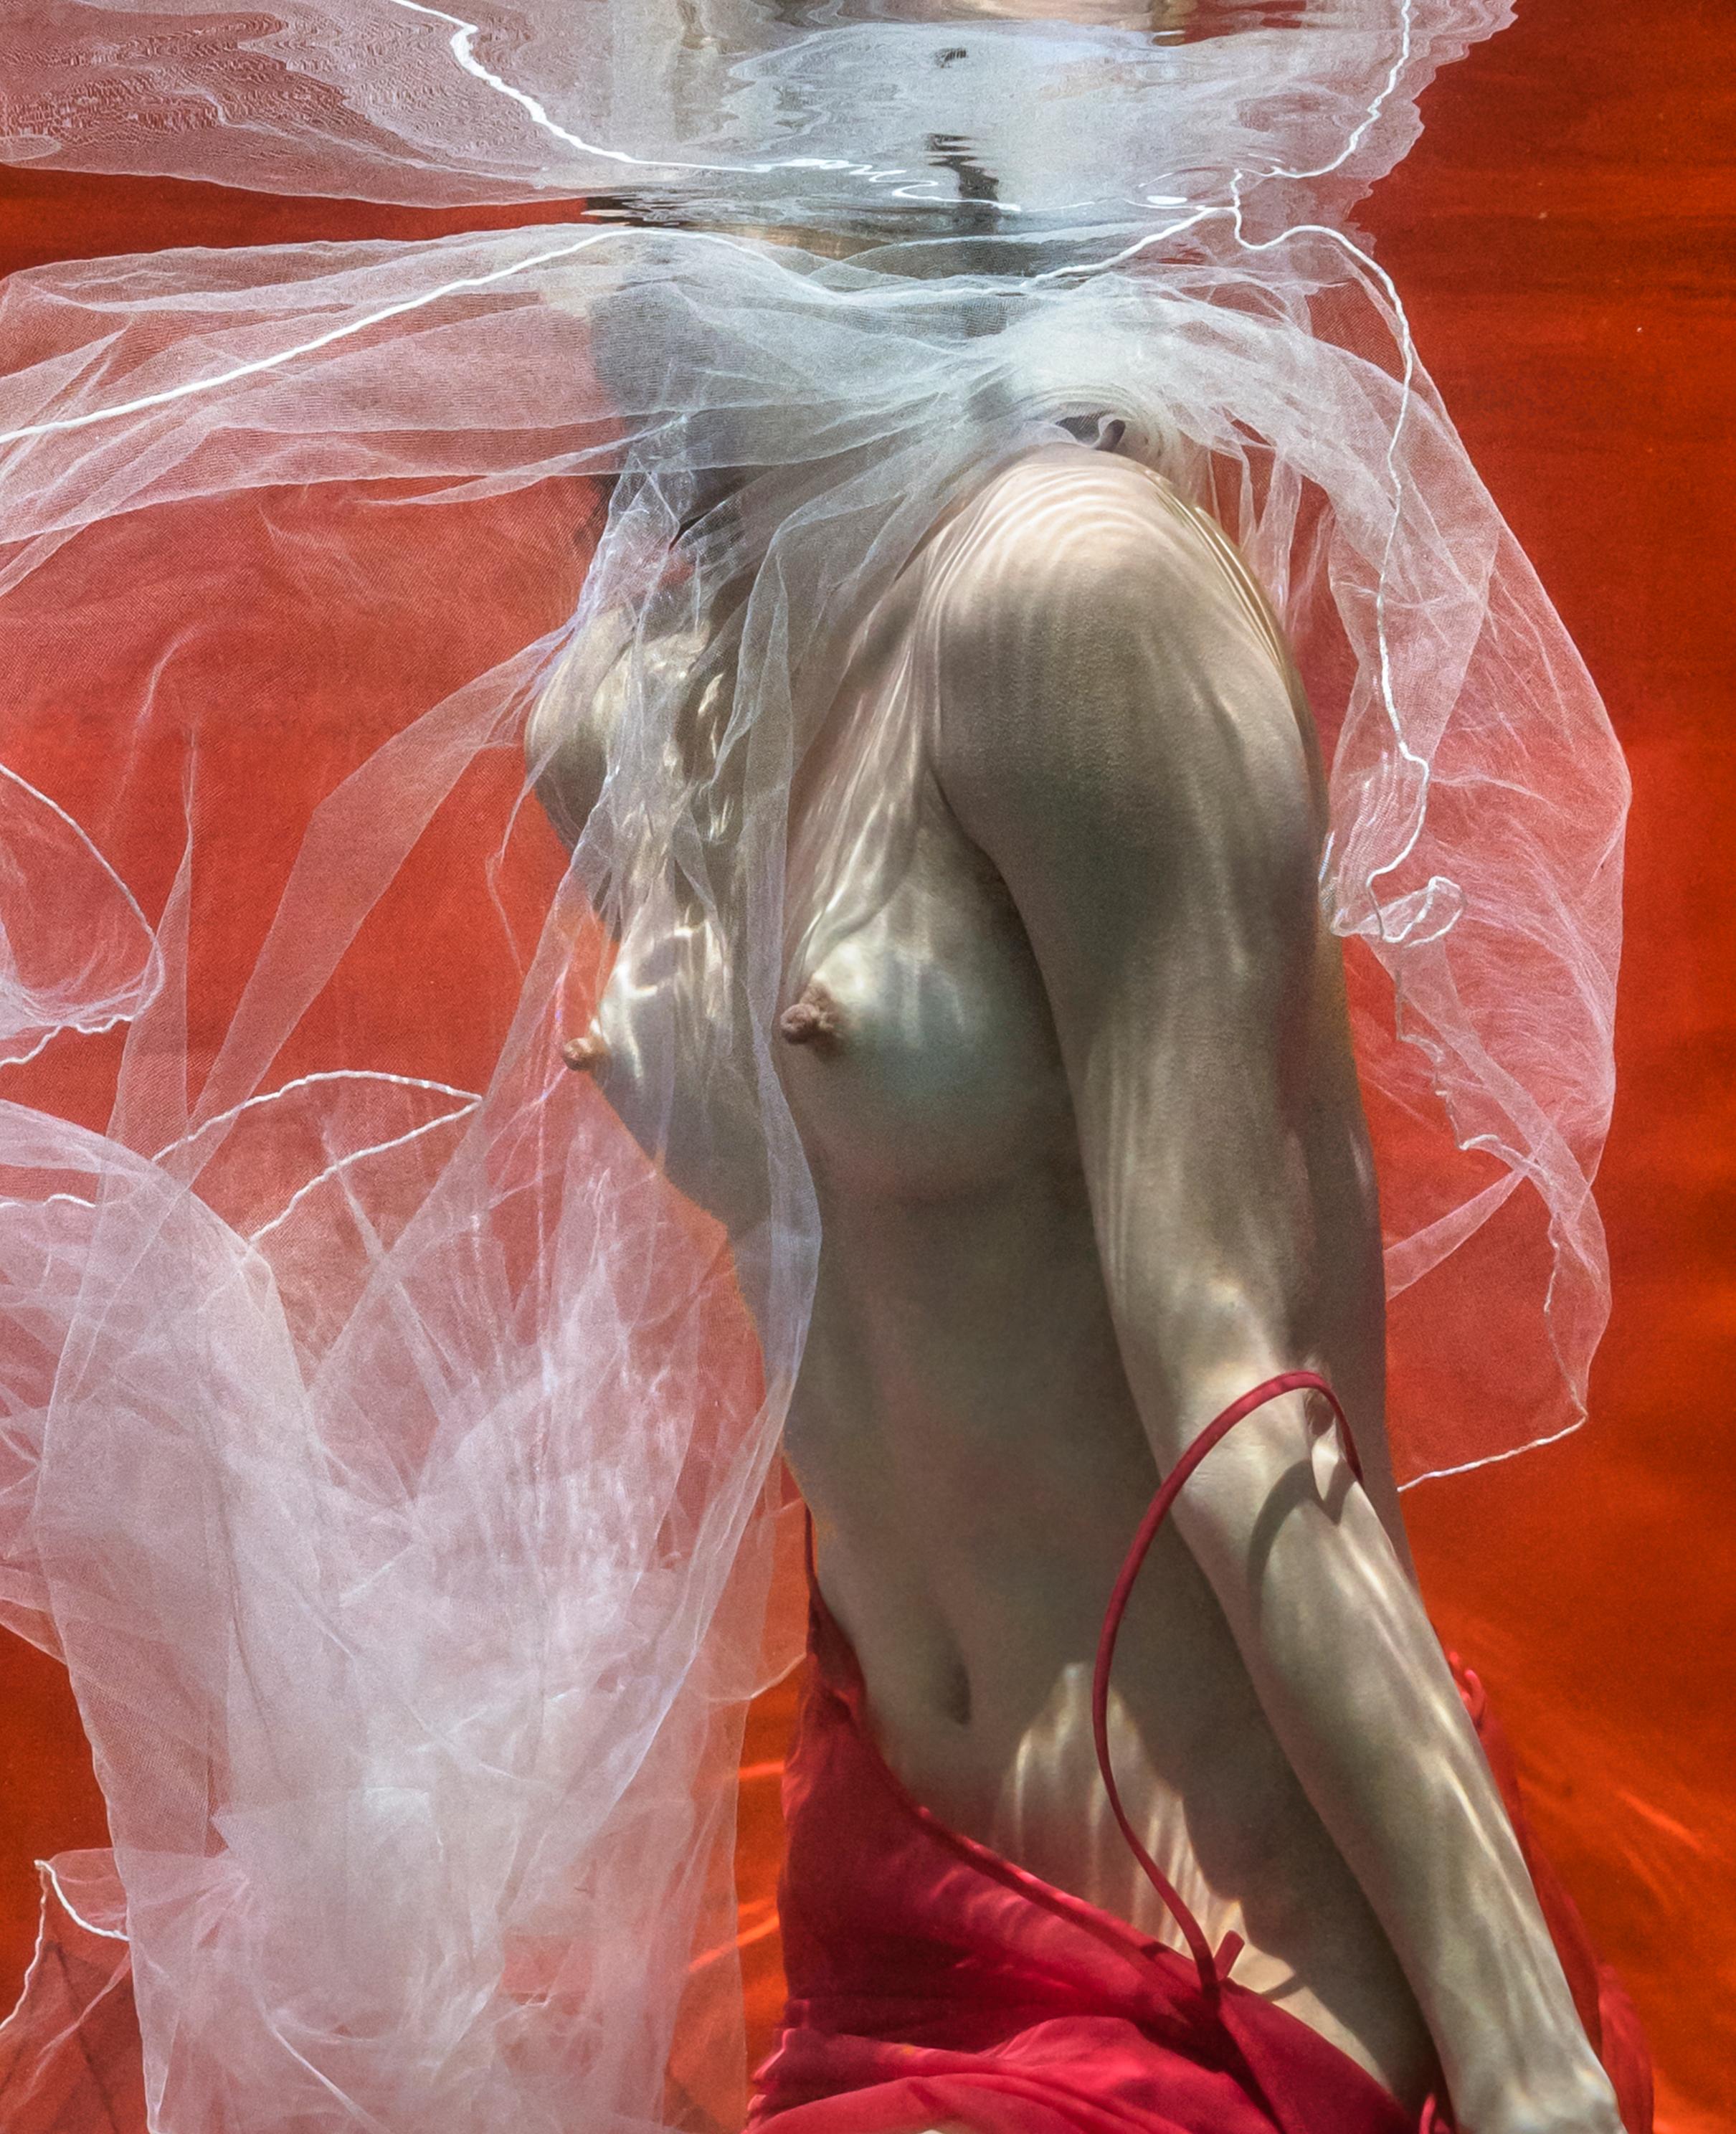 Ein Unterwasserfoto einer jungen Frau ohne Oberteil mit weißem Tüllschal, die ihren roten Rock auf leuchtend rotem Hintergrund auszieht. 

Original-Digitaldruck auf Archivpapier, vom Künstler signiert.
Limitierte Auflage von 24 Exemplaren